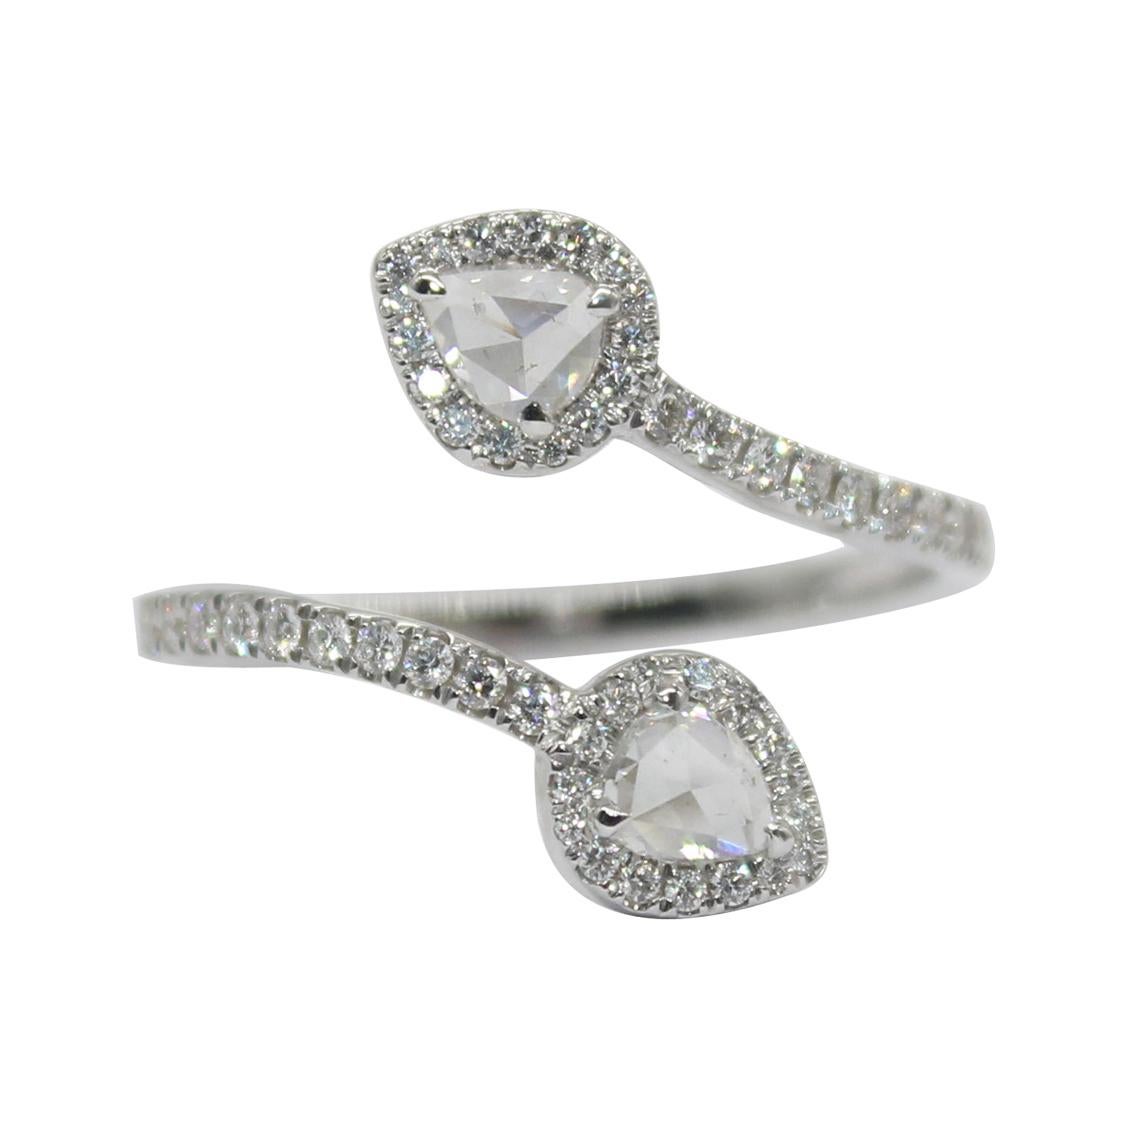 PANIM 0.68 Carat Two Pear Rosecut Diamond Ring in 18 Karat White Gold For Sale